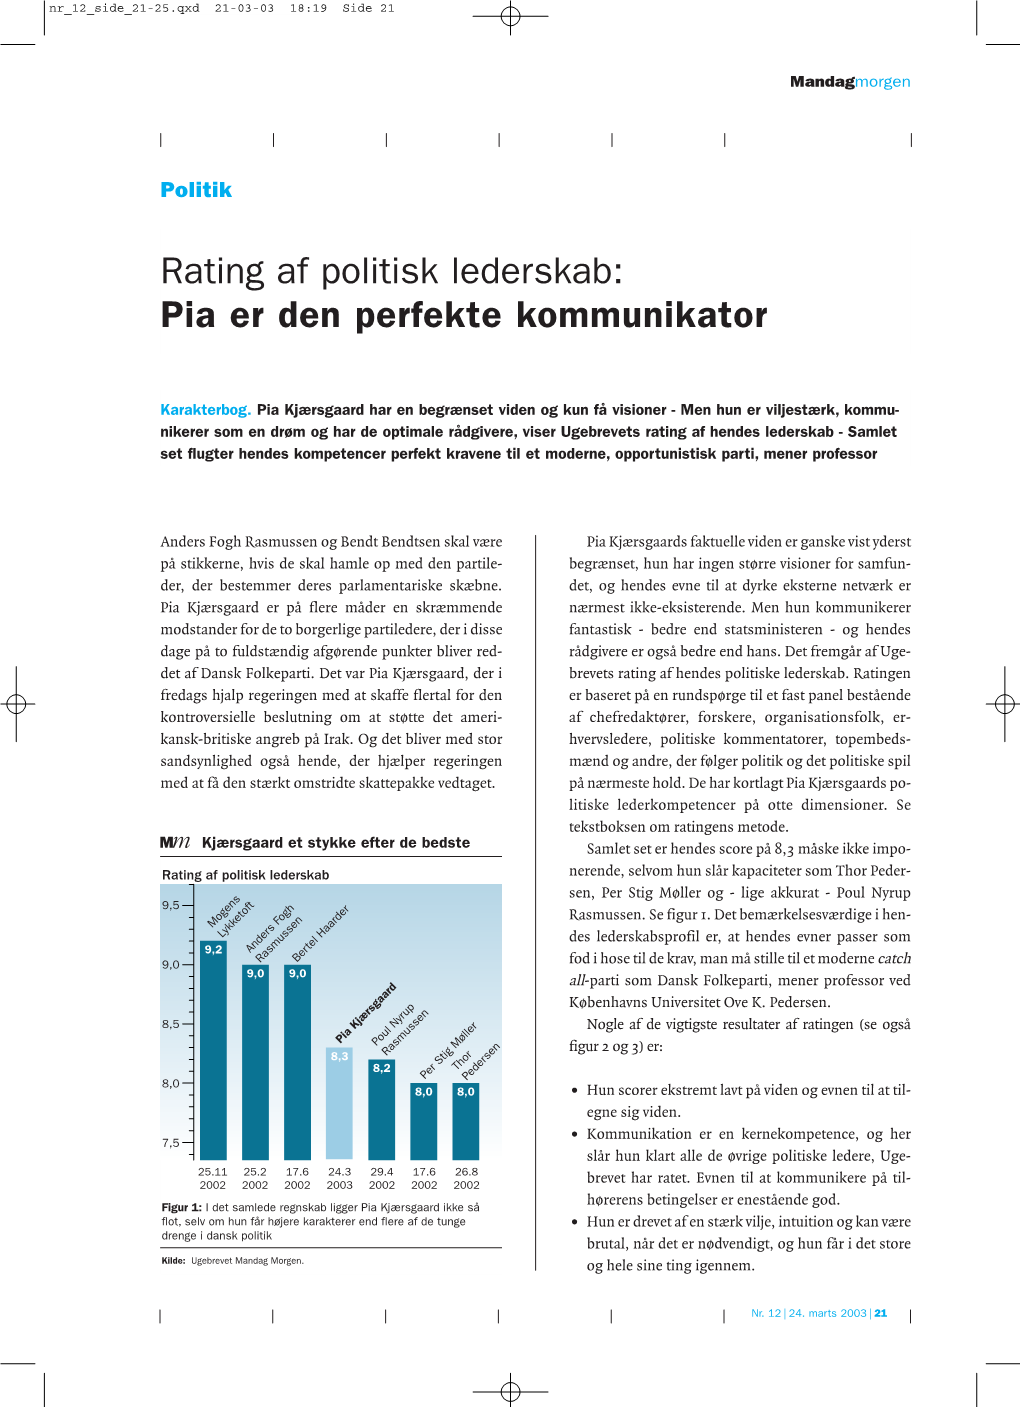 Rating Af Politisk Lederskab: Pia Er Den Perfekte Kommunikator